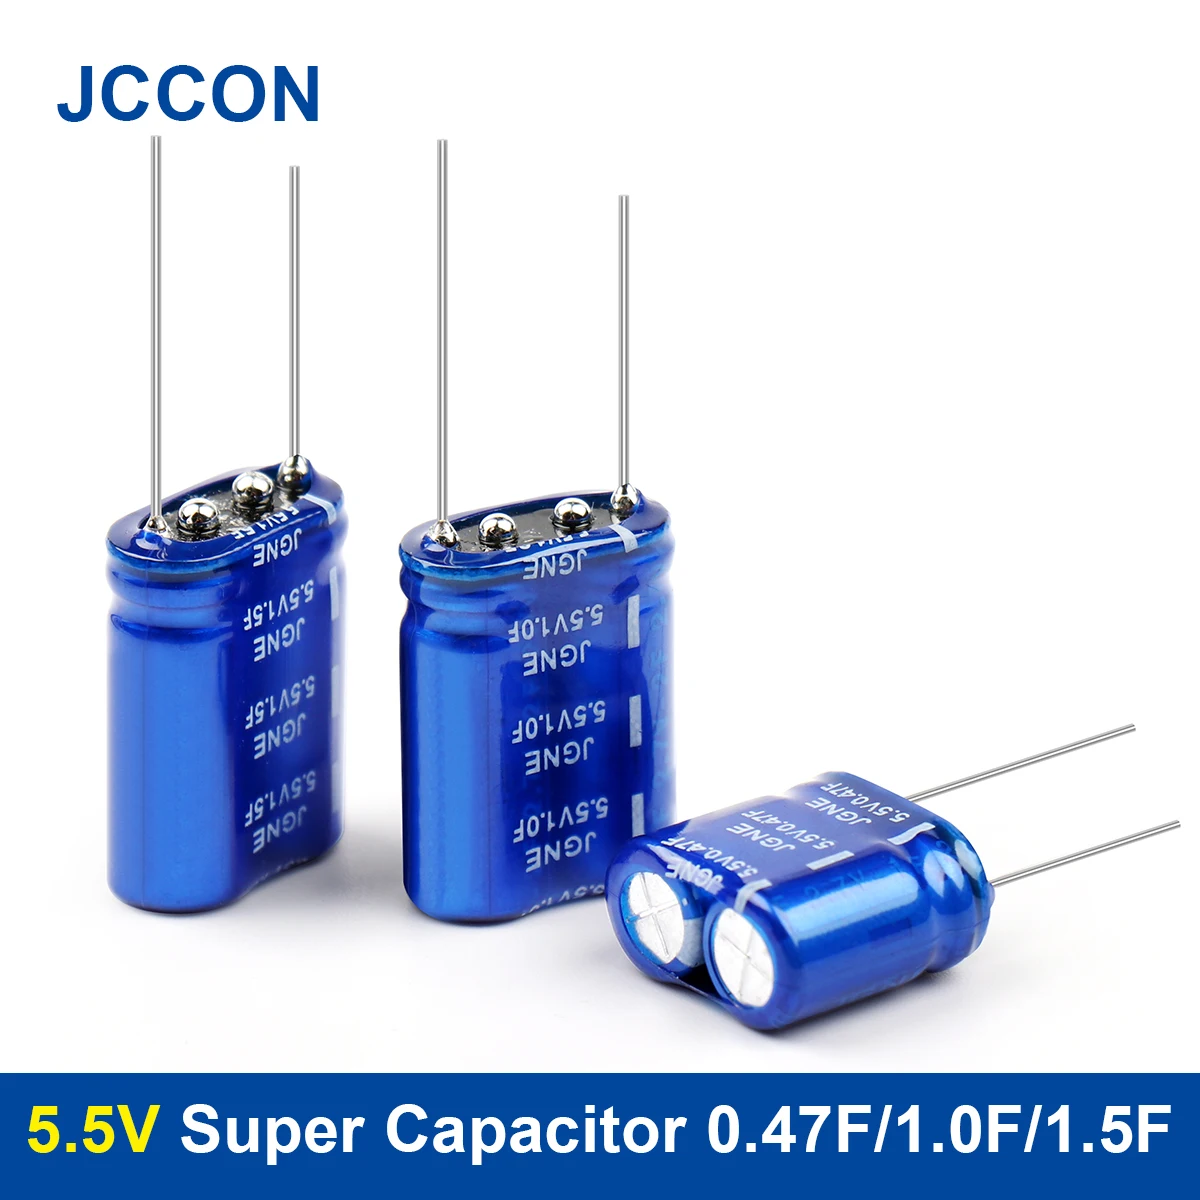 

2Pcs Super Capacitor 5.5V 0.47F/1.0F/1.5F Farah Capacitor Combination 5.5V Capacitors Vehicle Recorder Supercapacitor